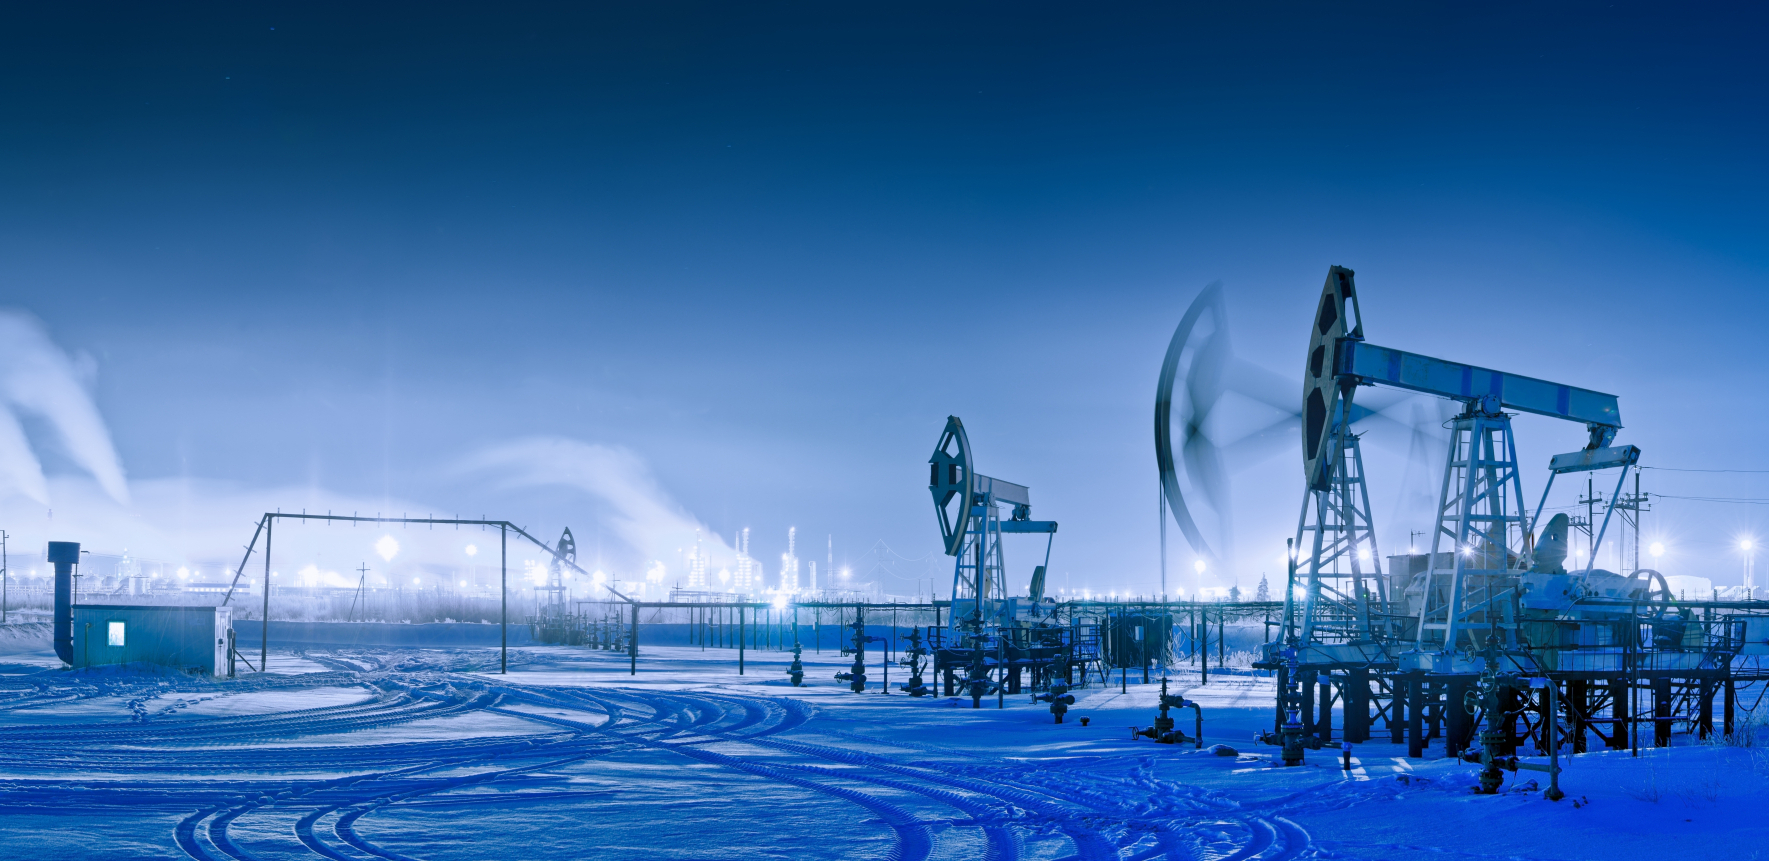 RUSI DOBILI NOVO BOGATSTVO! Čak 82 miliona tona nafte pronađeno u Pečorskom moru